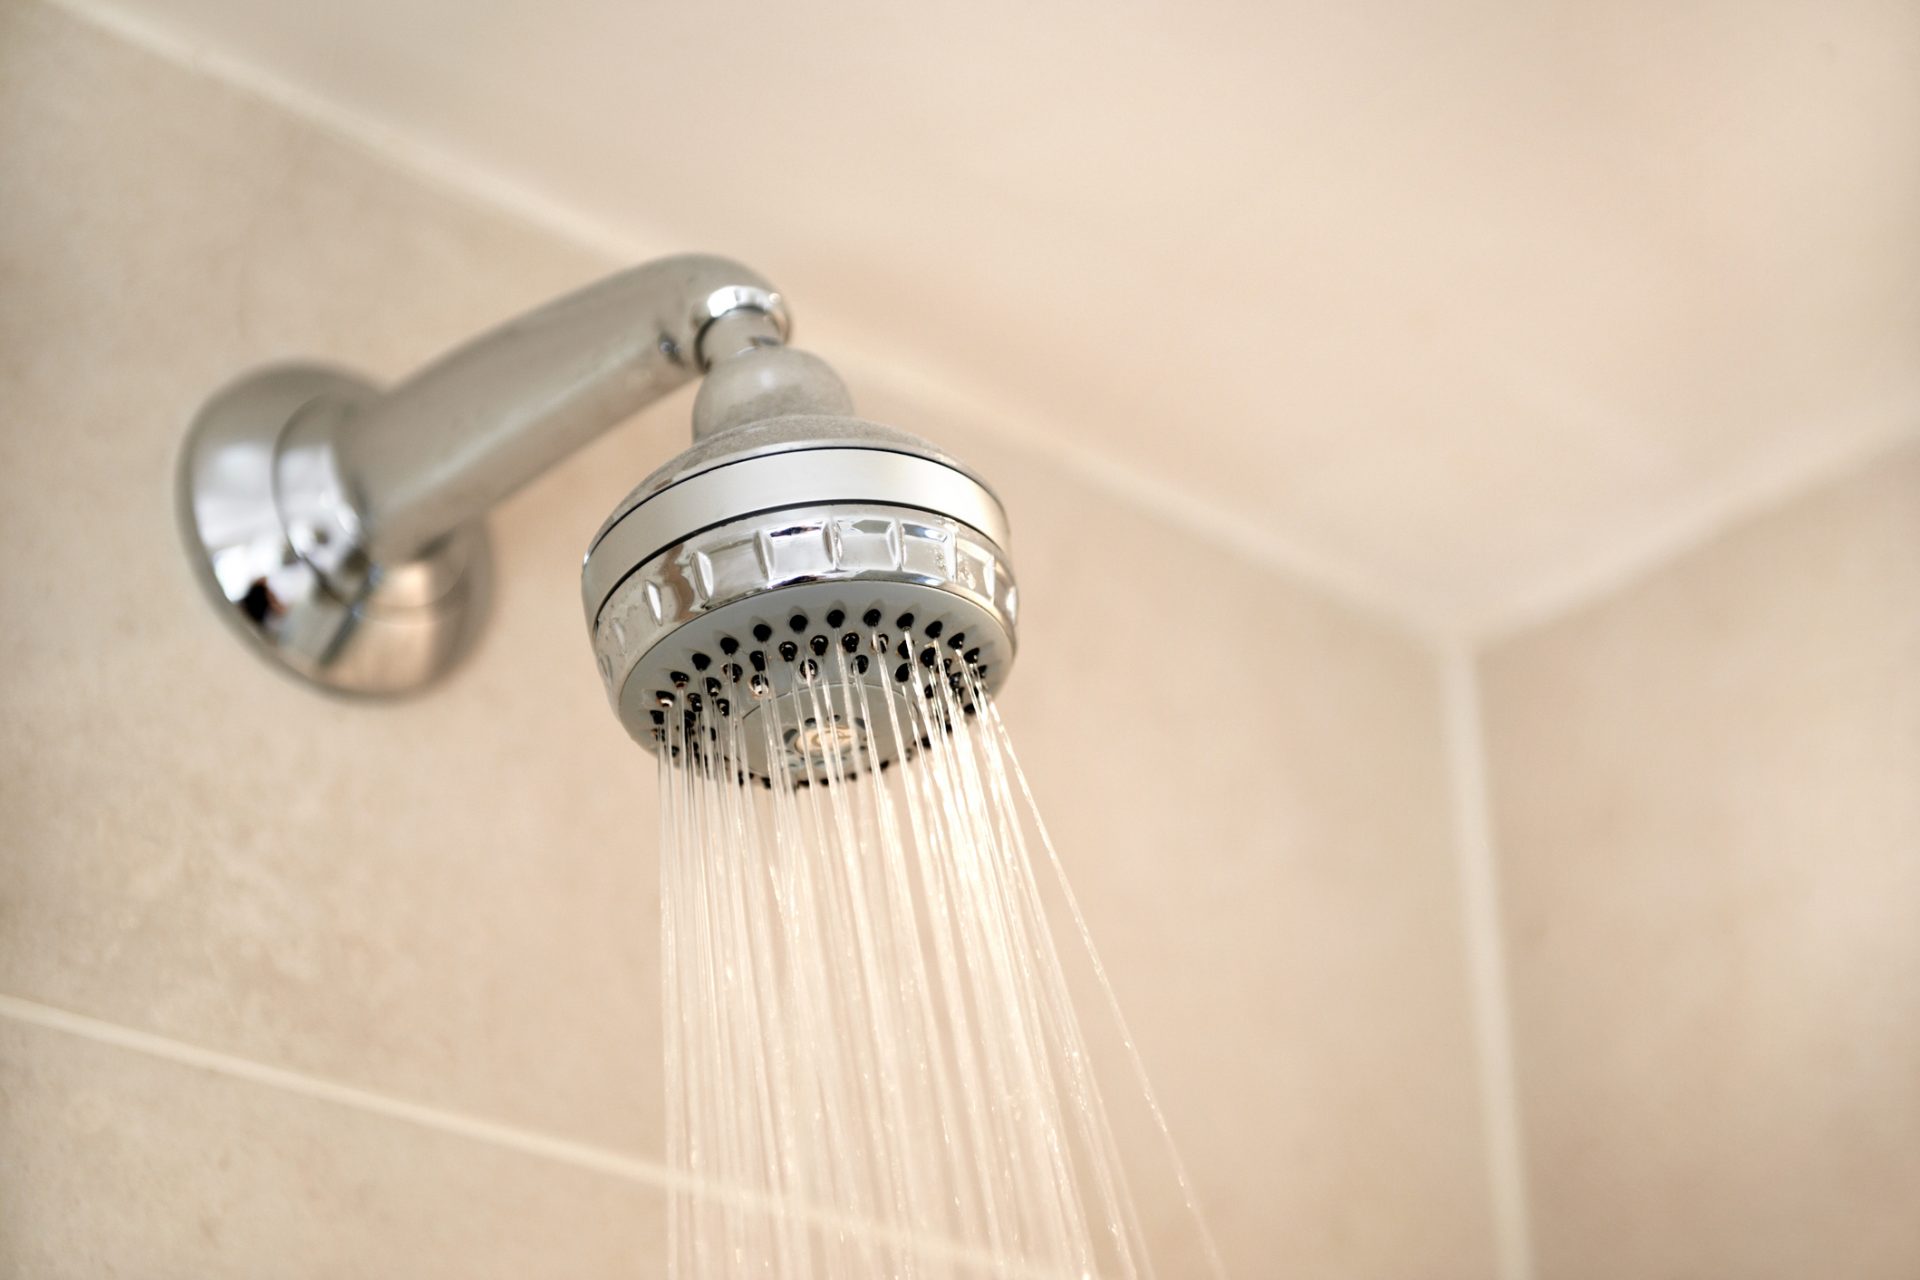 <p>Una doccia media consuma circa 7,9 litri d'acqua al minuto. Se accorci la tua doccia anche solo di 2 minuti, potresti risparmiare quasi 15,9 litri d'acqua ogni volta. Se più persone lo facessero, si risparmierebbe senza dubbio molta acqua pulita.</p>